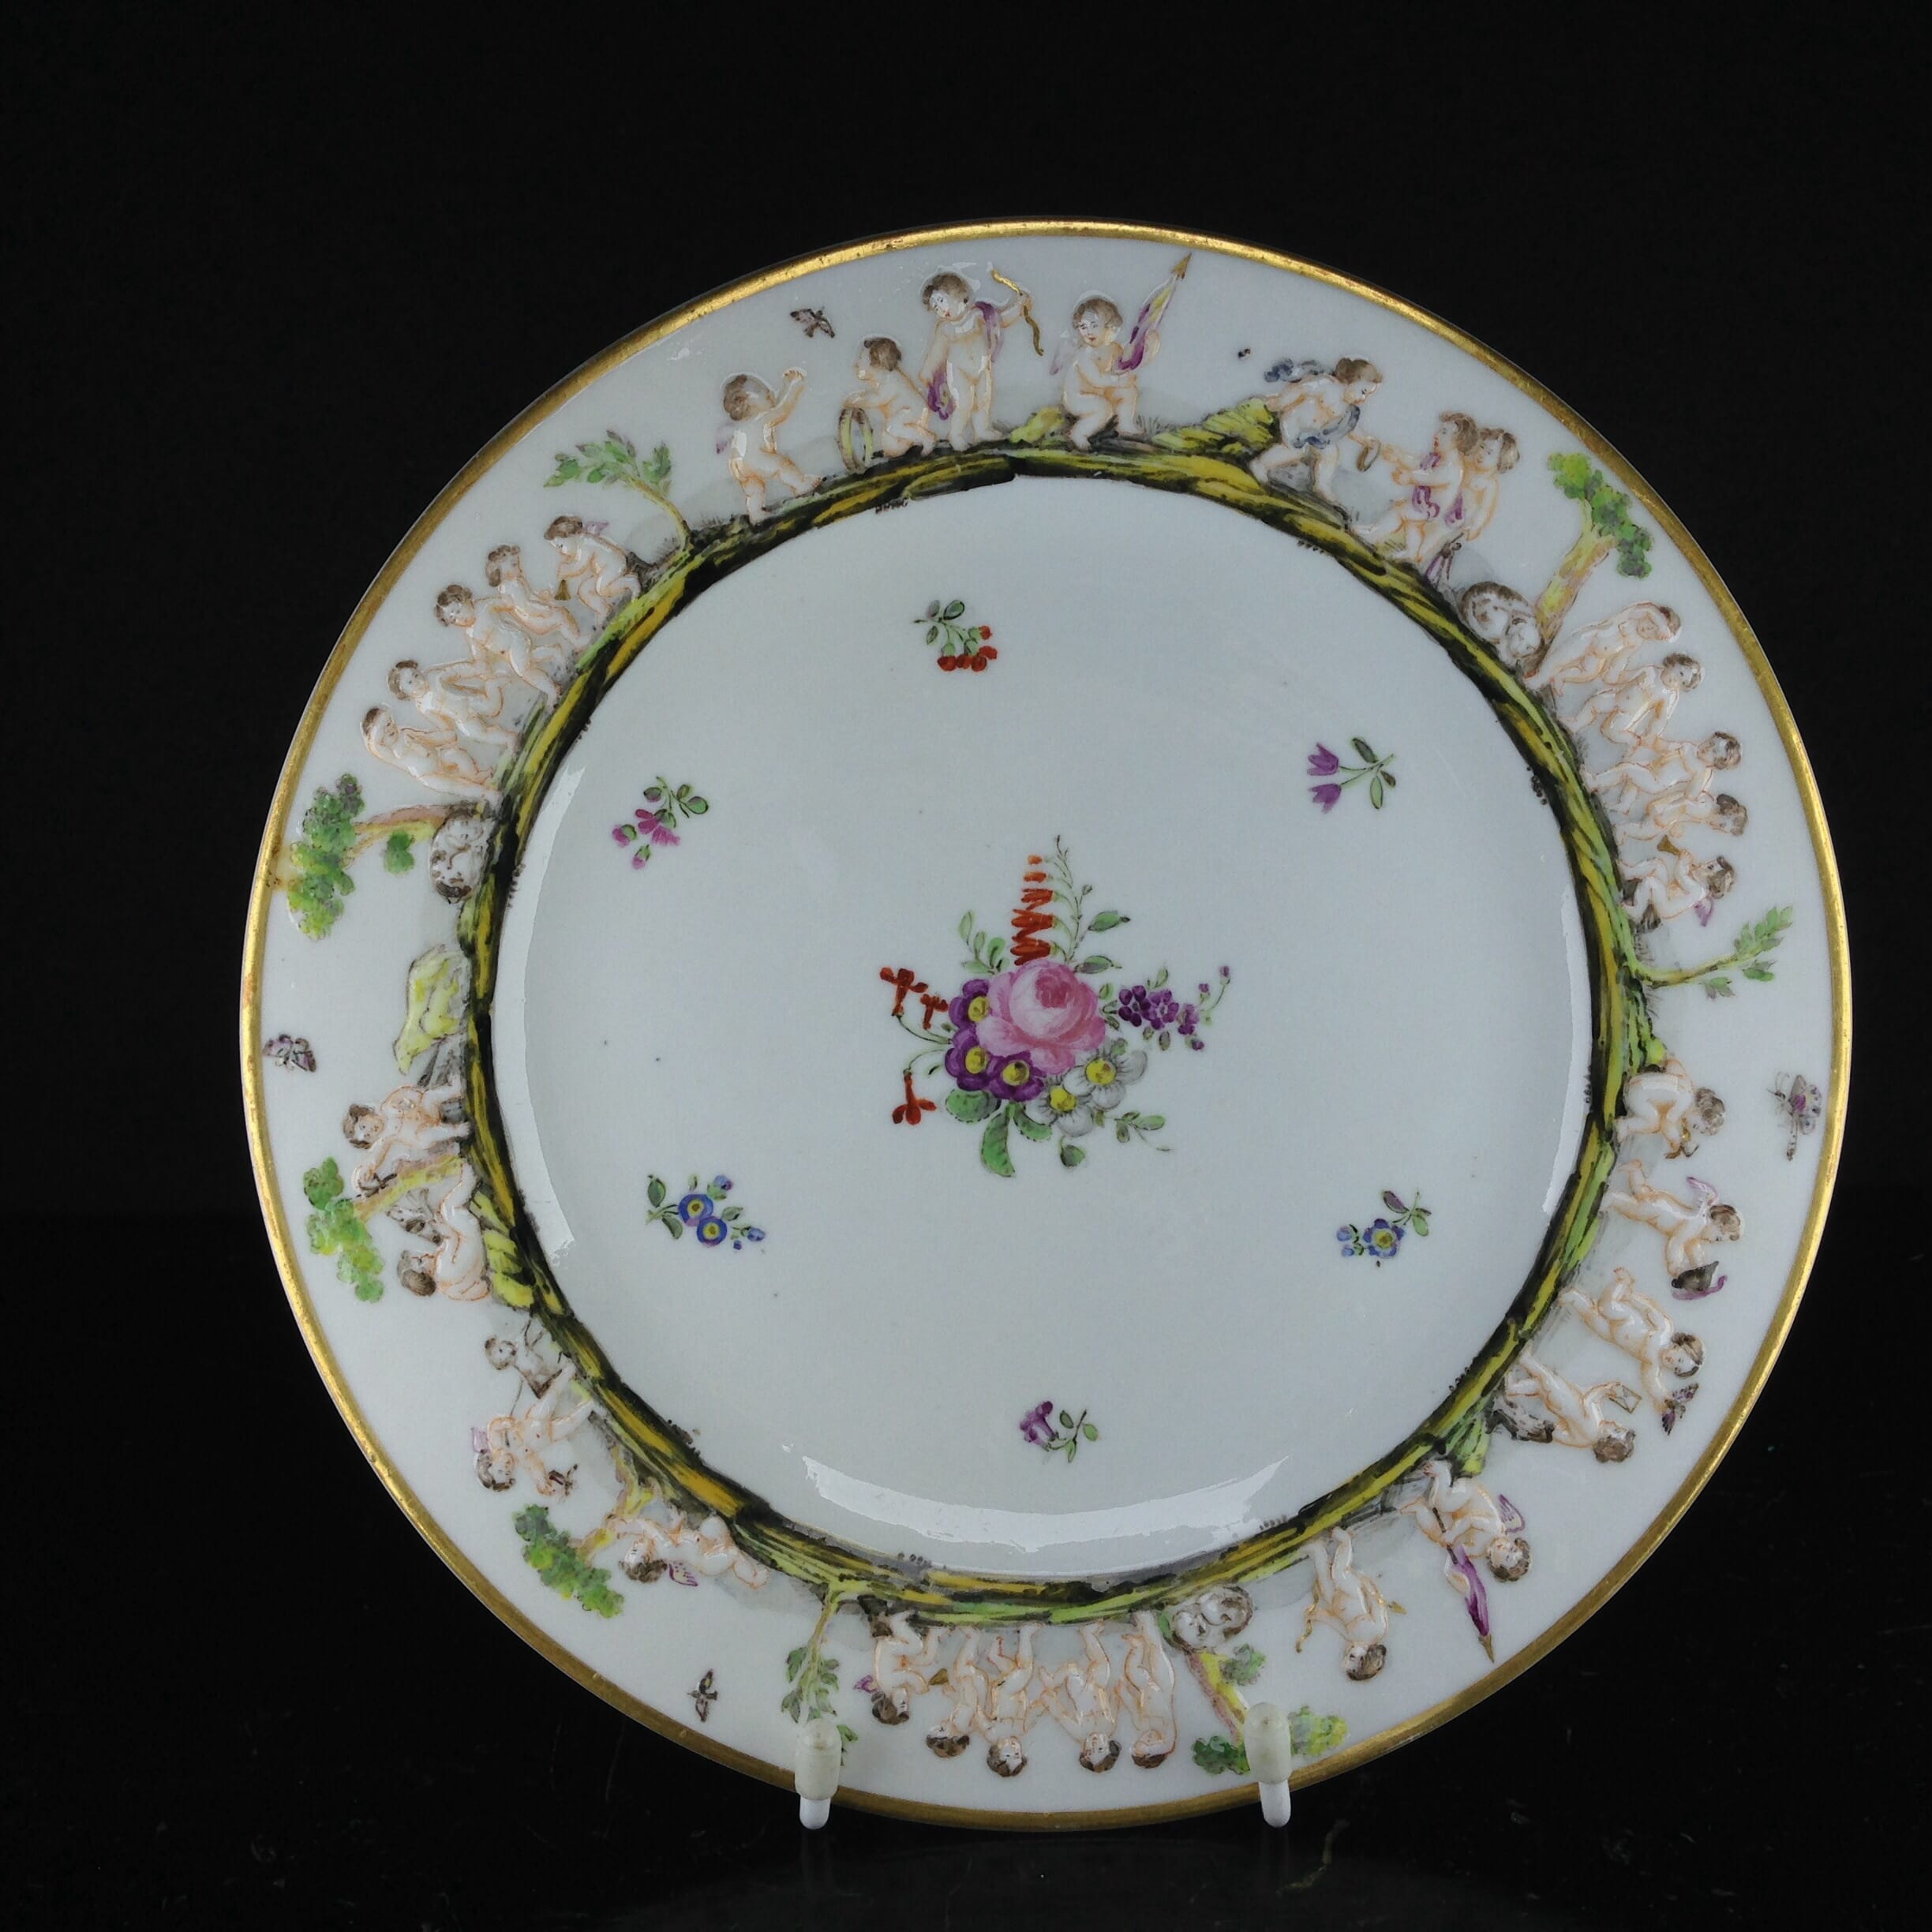 Naples Royal Porcelain Factory plate, cherubs, c.1780. -0